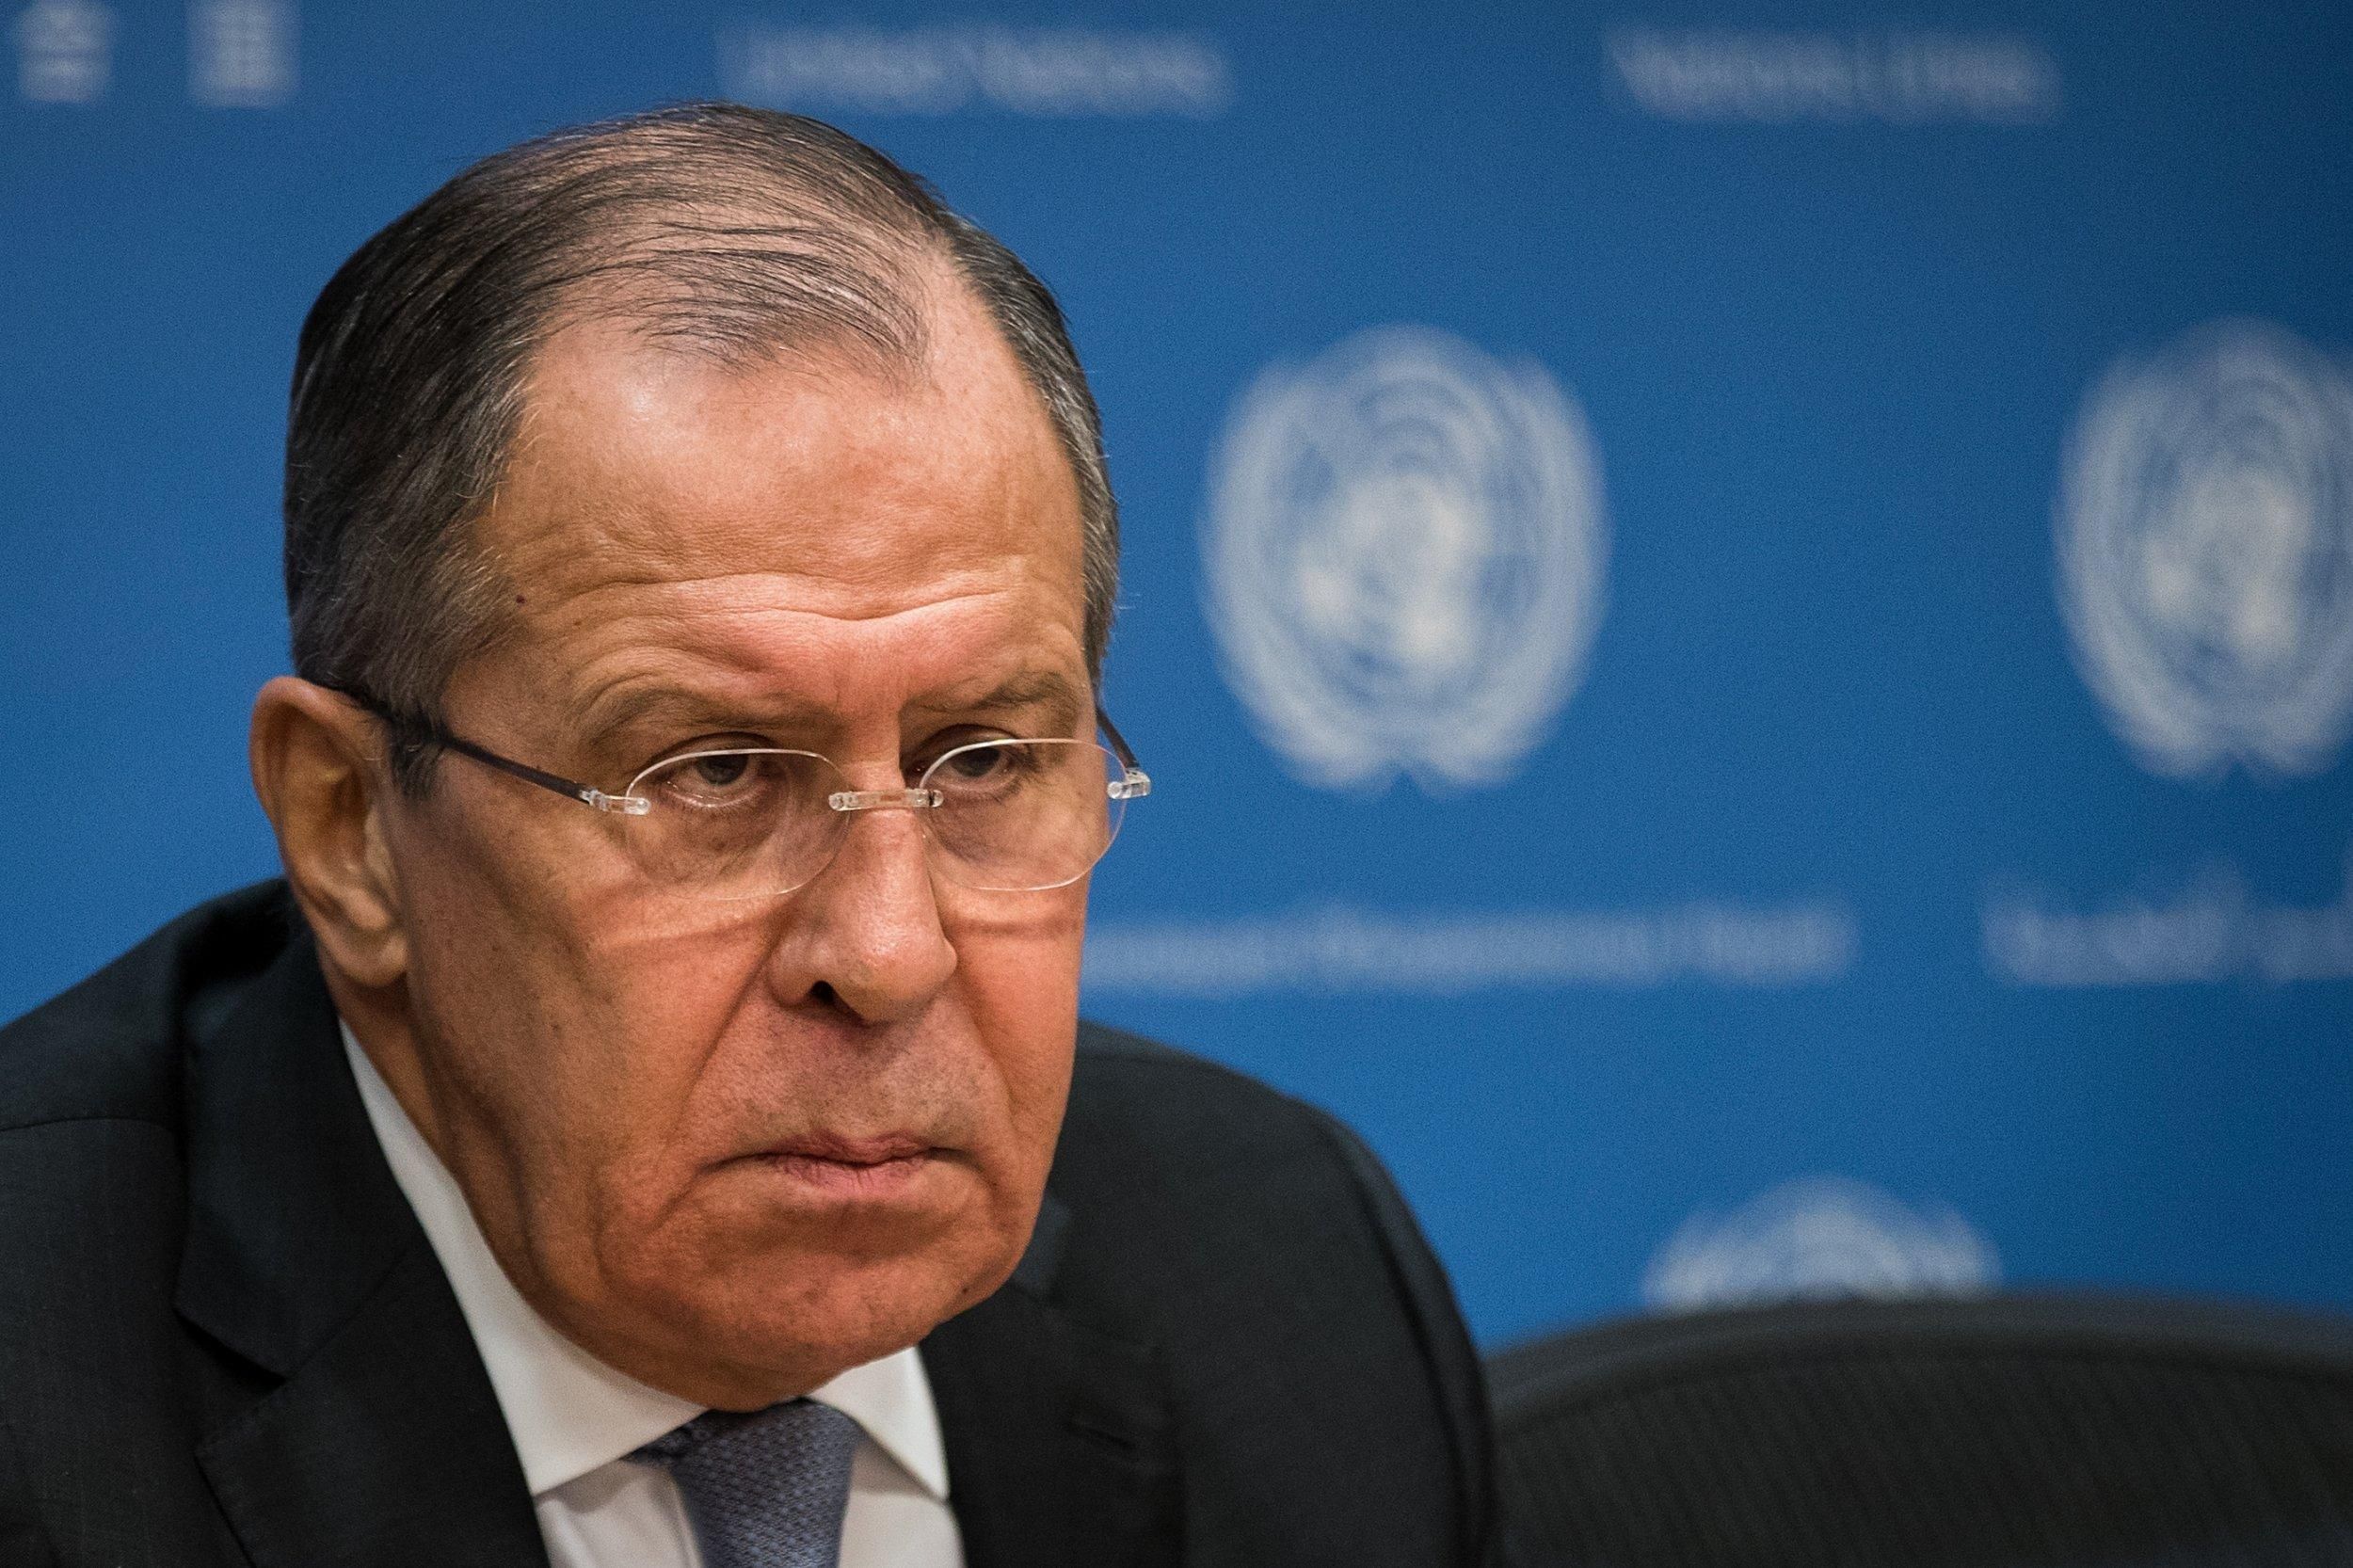 Россия угрожает "самыми серьезными последствиями", если США проигнорируют ее требования